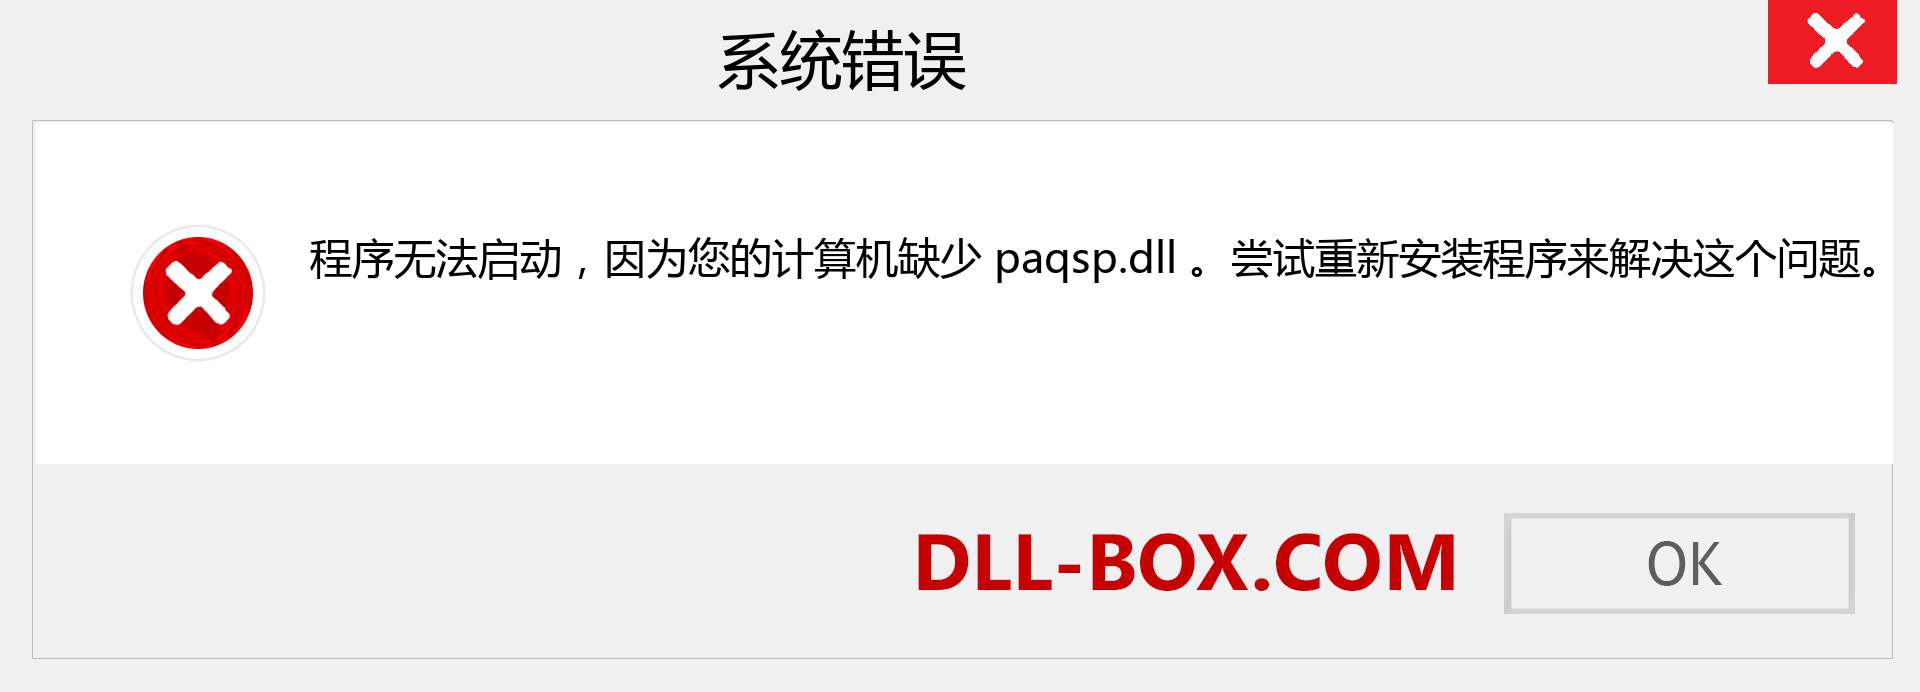 paqsp.dll 文件丢失？。 适用于 Windows 7、8、10 的下载 - 修复 Windows、照片、图像上的 paqsp dll 丢失错误